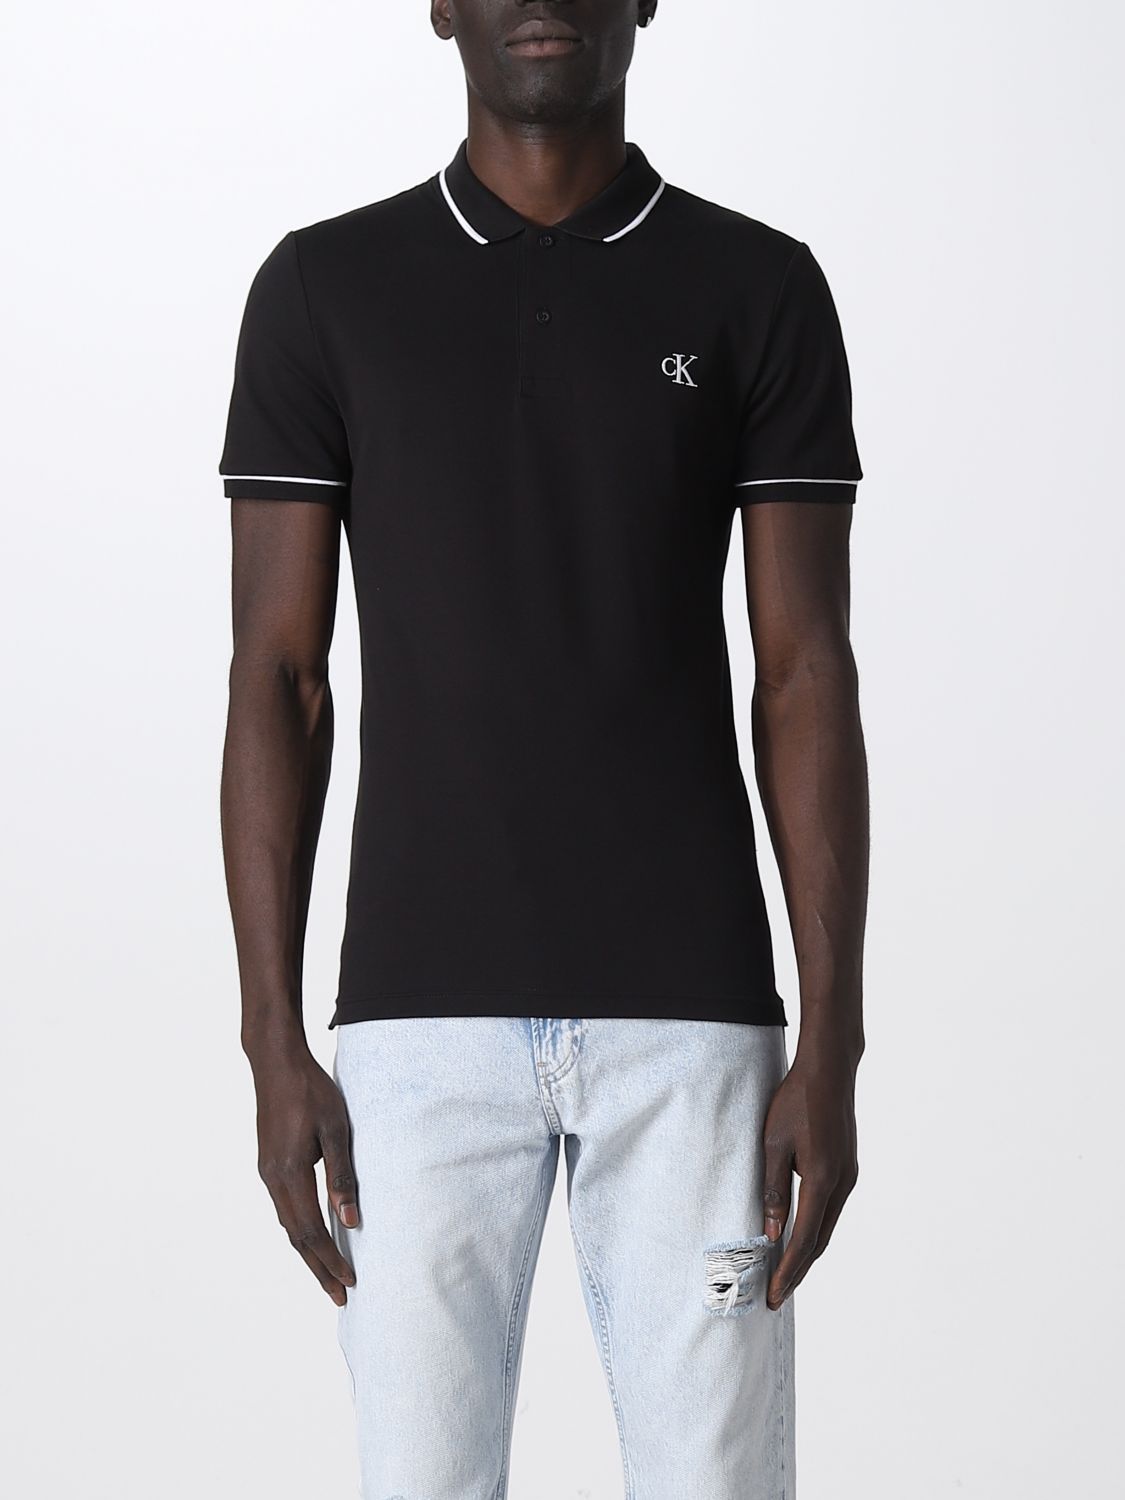 Interactie Dusver verklaren CALVIN KLEIN JEANS: polo shirt for man - Black | Calvin Klein Jeans polo  shirt J30J315603 online on GIGLIO.COM